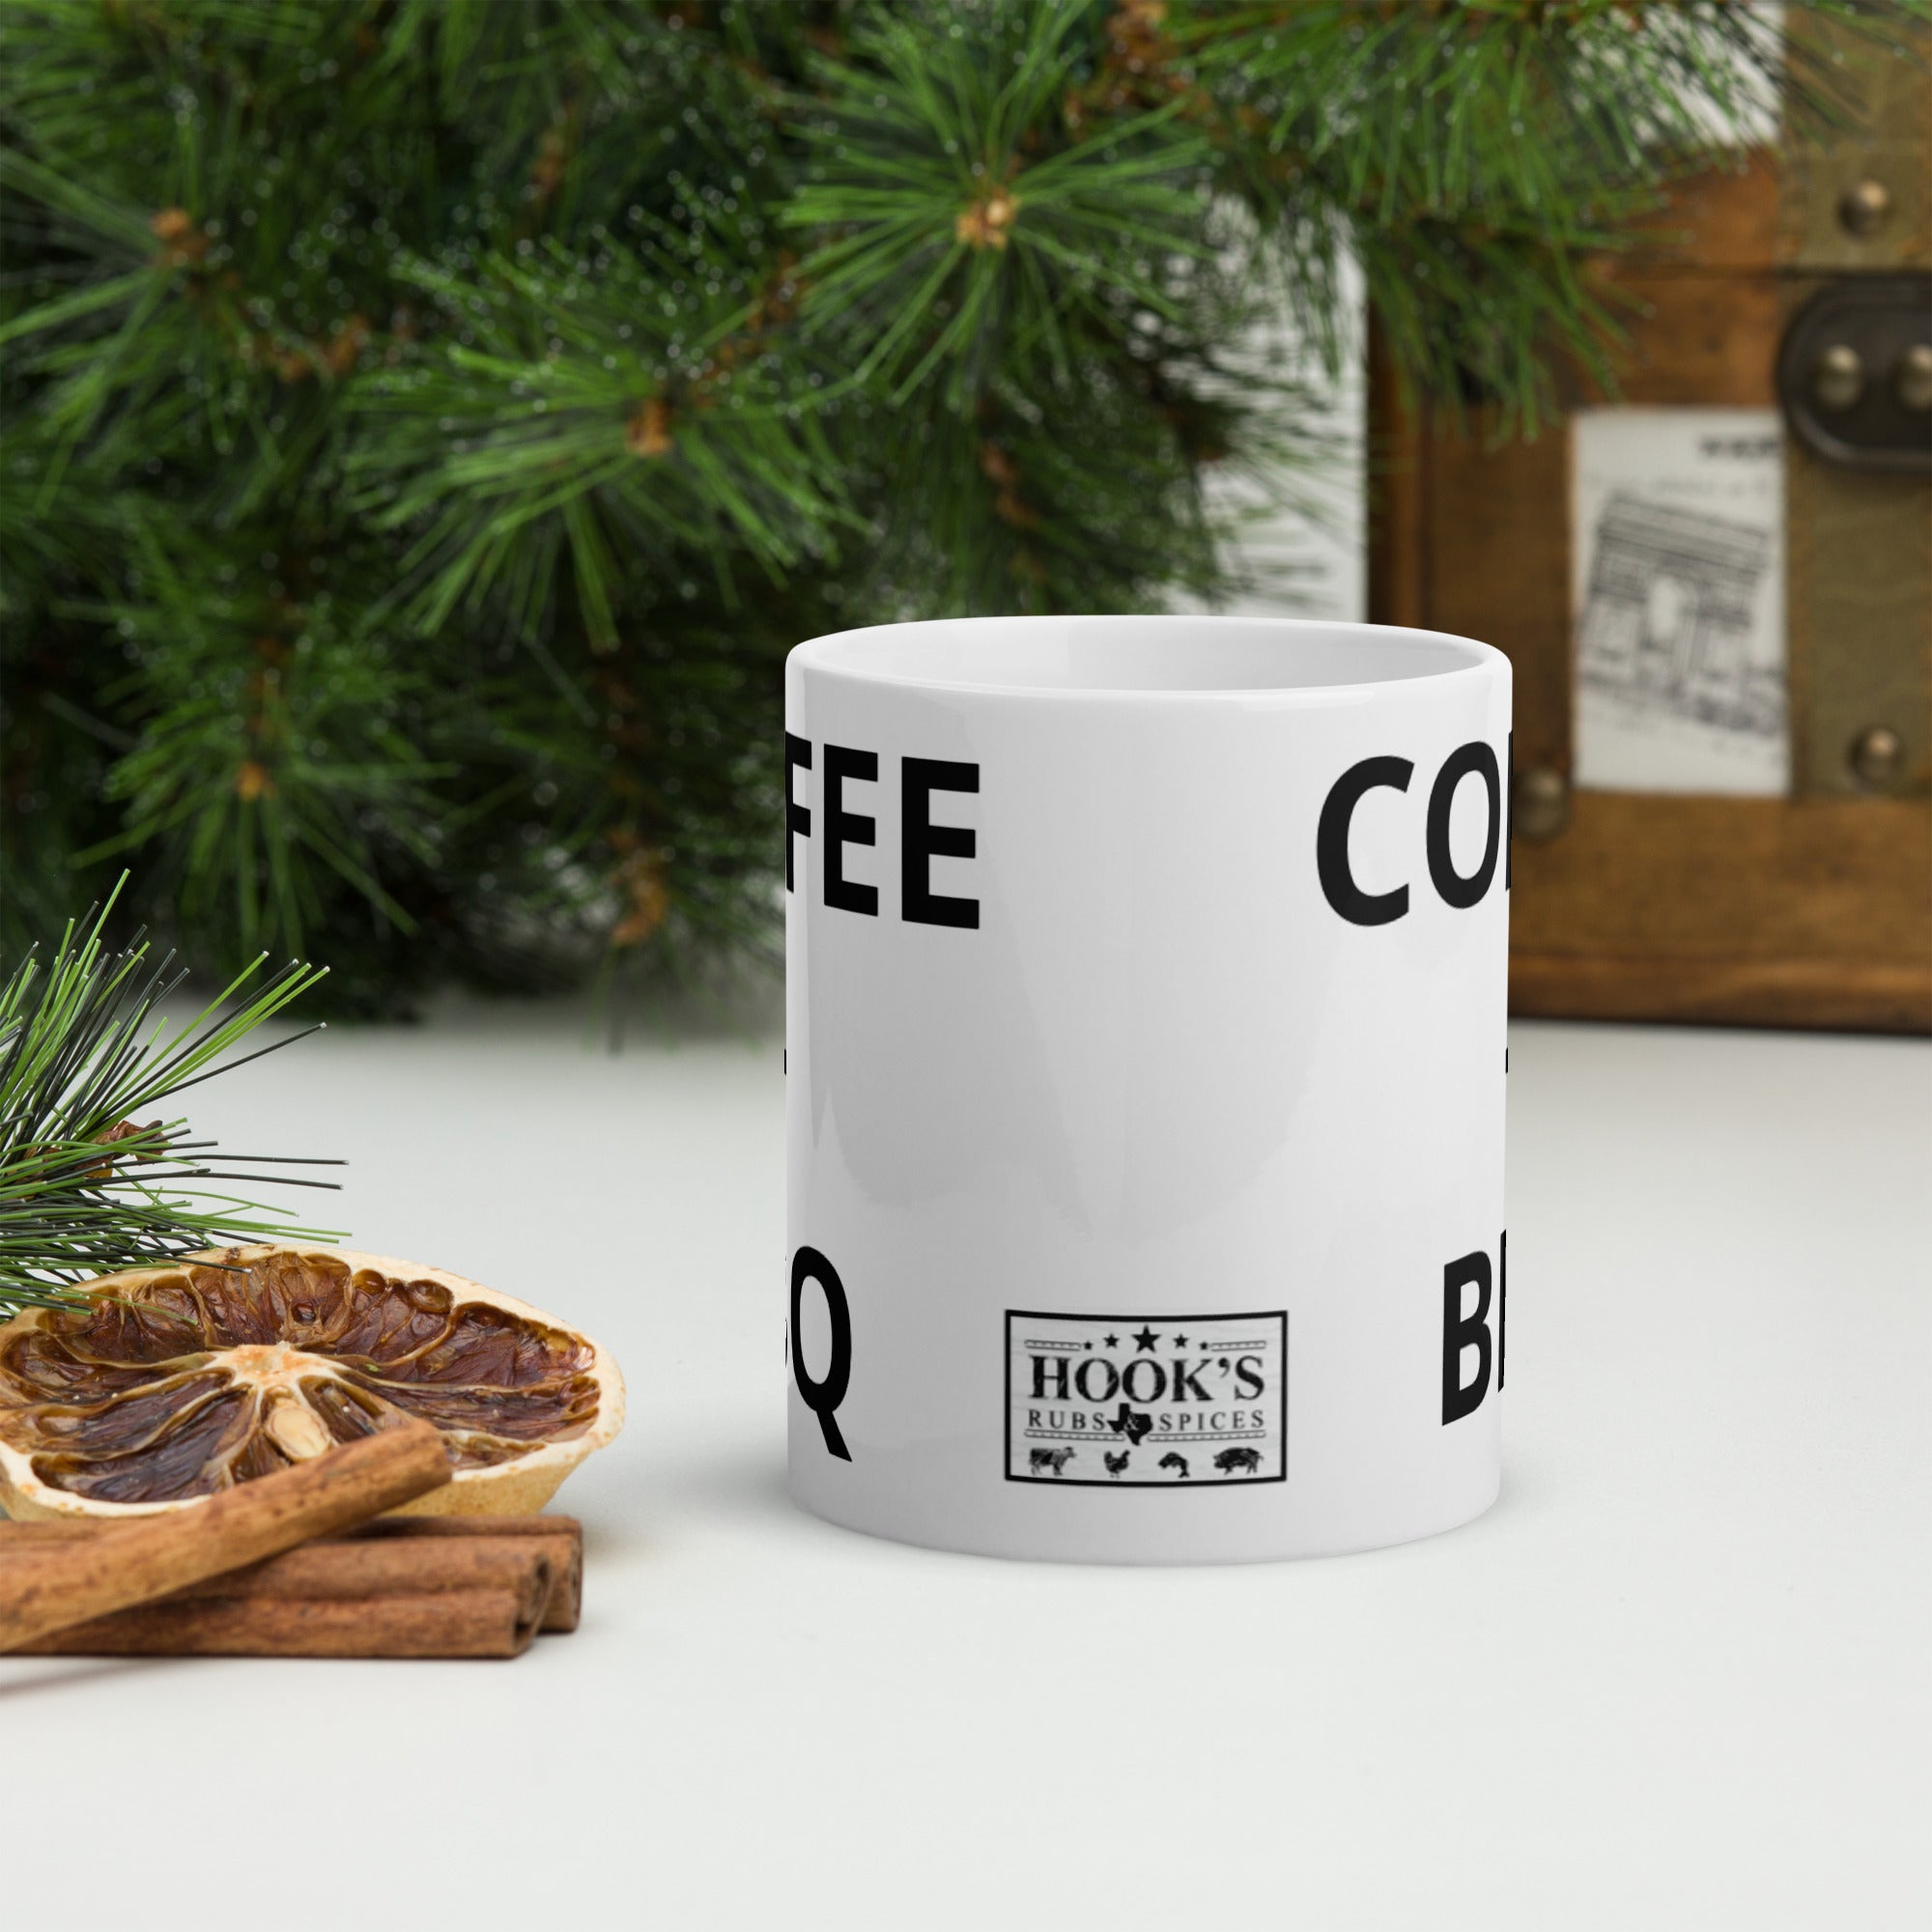 Coffee + BBQ - 11 or 15 oz mug